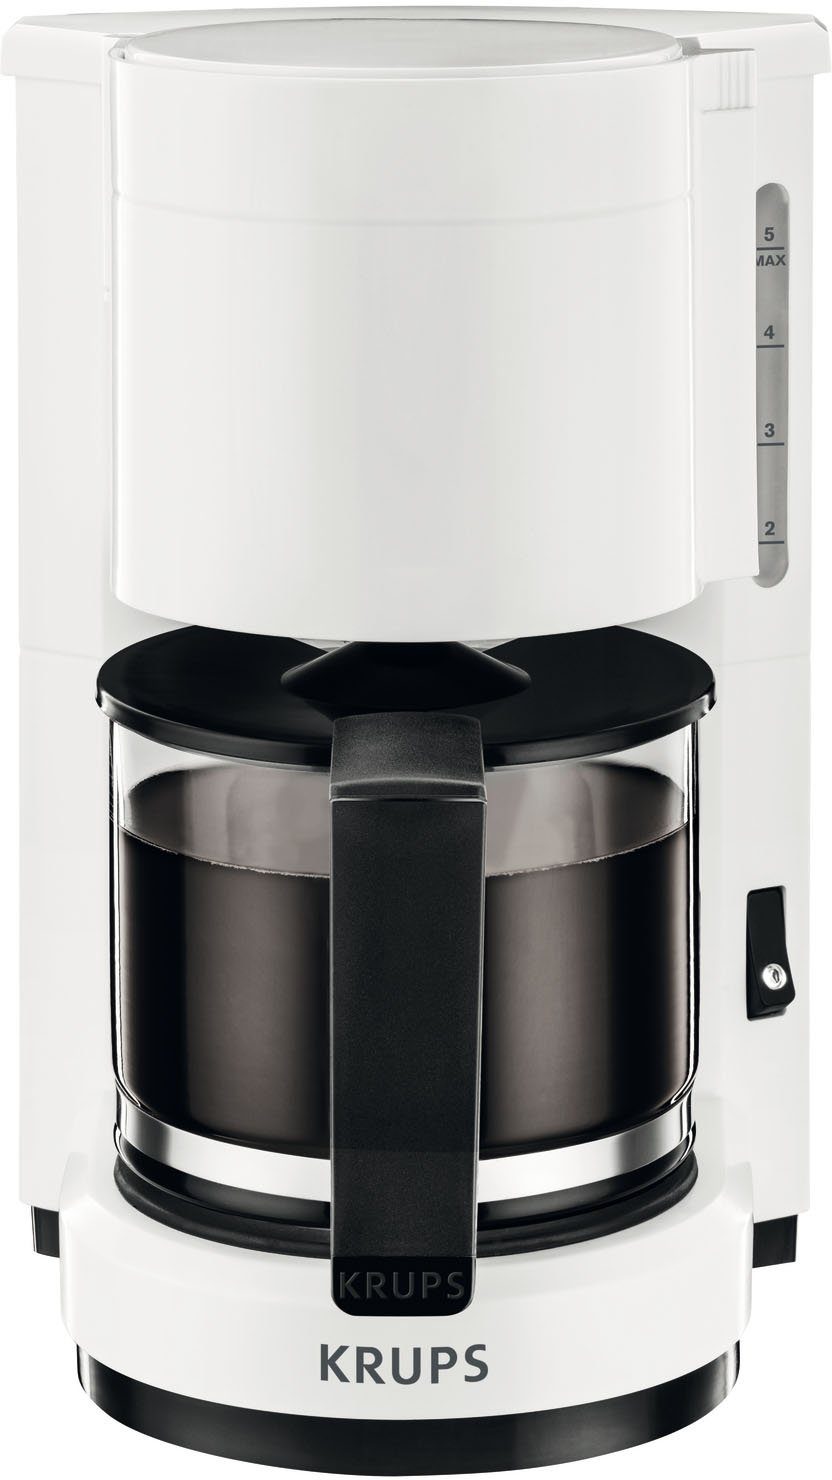 Krups Filterkaffeemaschine F18301 Aromacafe, 0,6l Kaffeekanne, für 5-7  Tassen Kaffee, herausnehmbarer Filterhalter, Warmhaltefunktion,  Warmhaltefunktion mit automatischer Abschaltung nach 30 Minuten